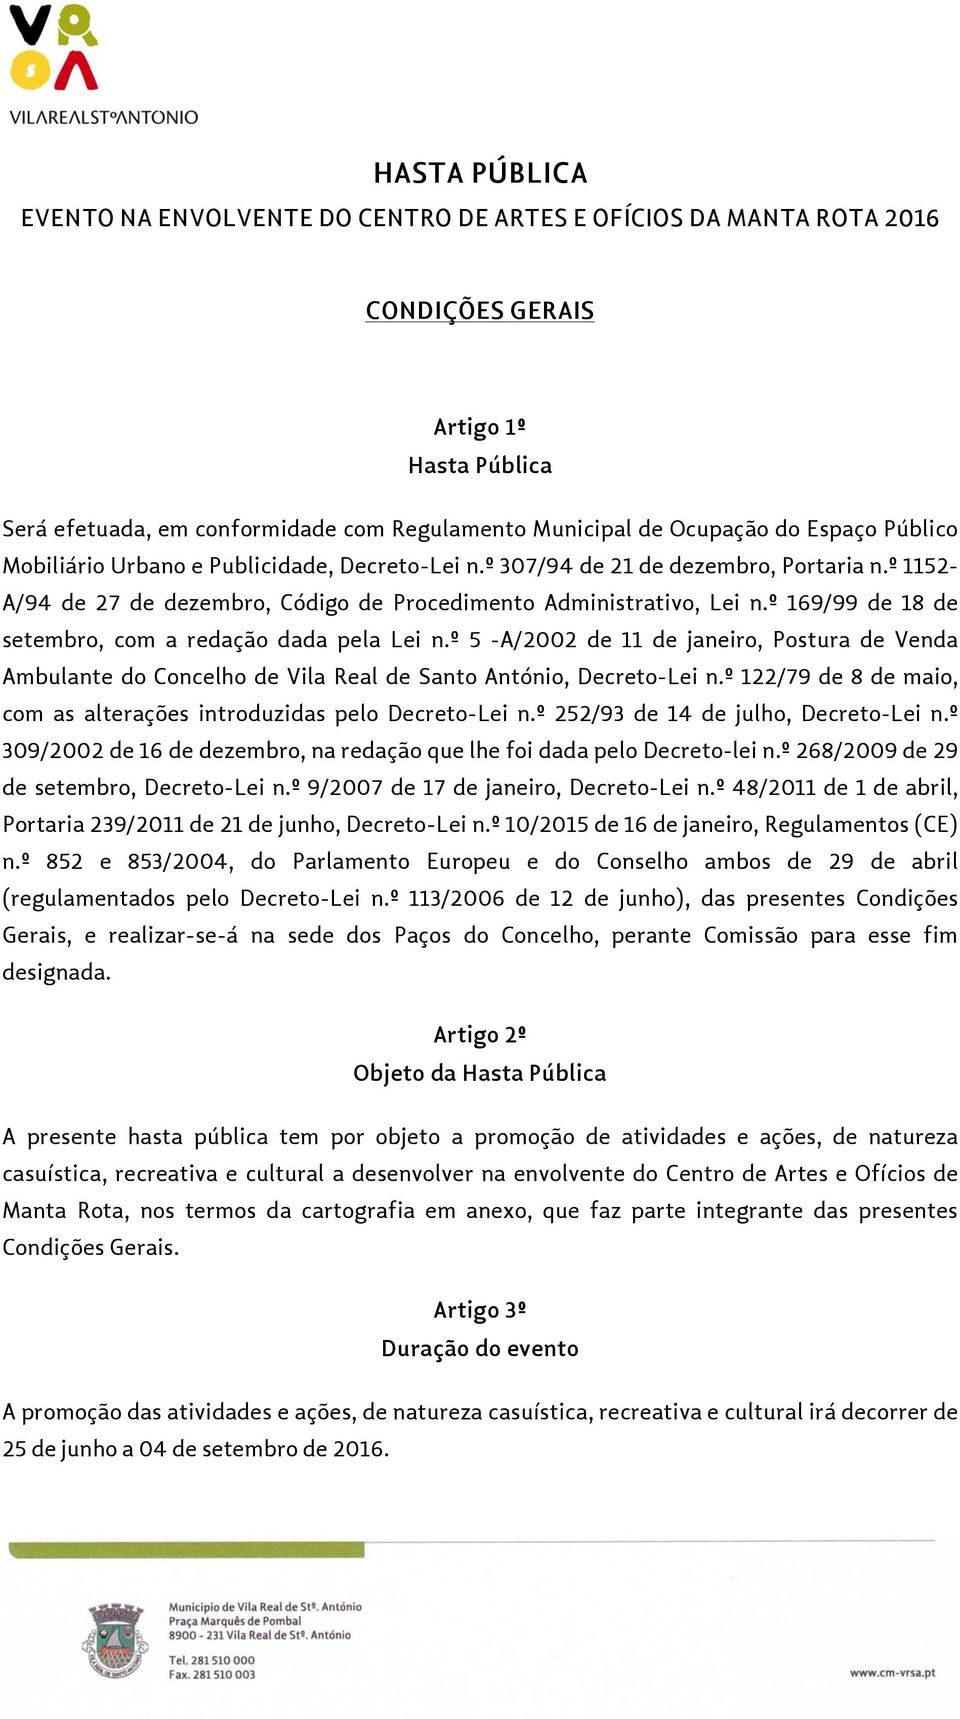 º 169/99 de 18 de setembro, com a redação dada pela Lei n.º 5 -A/2002 de 11 de janeiro, Postura de Venda Ambulante do Concelho de Vila Real de Santo António, Decreto-Lei n.